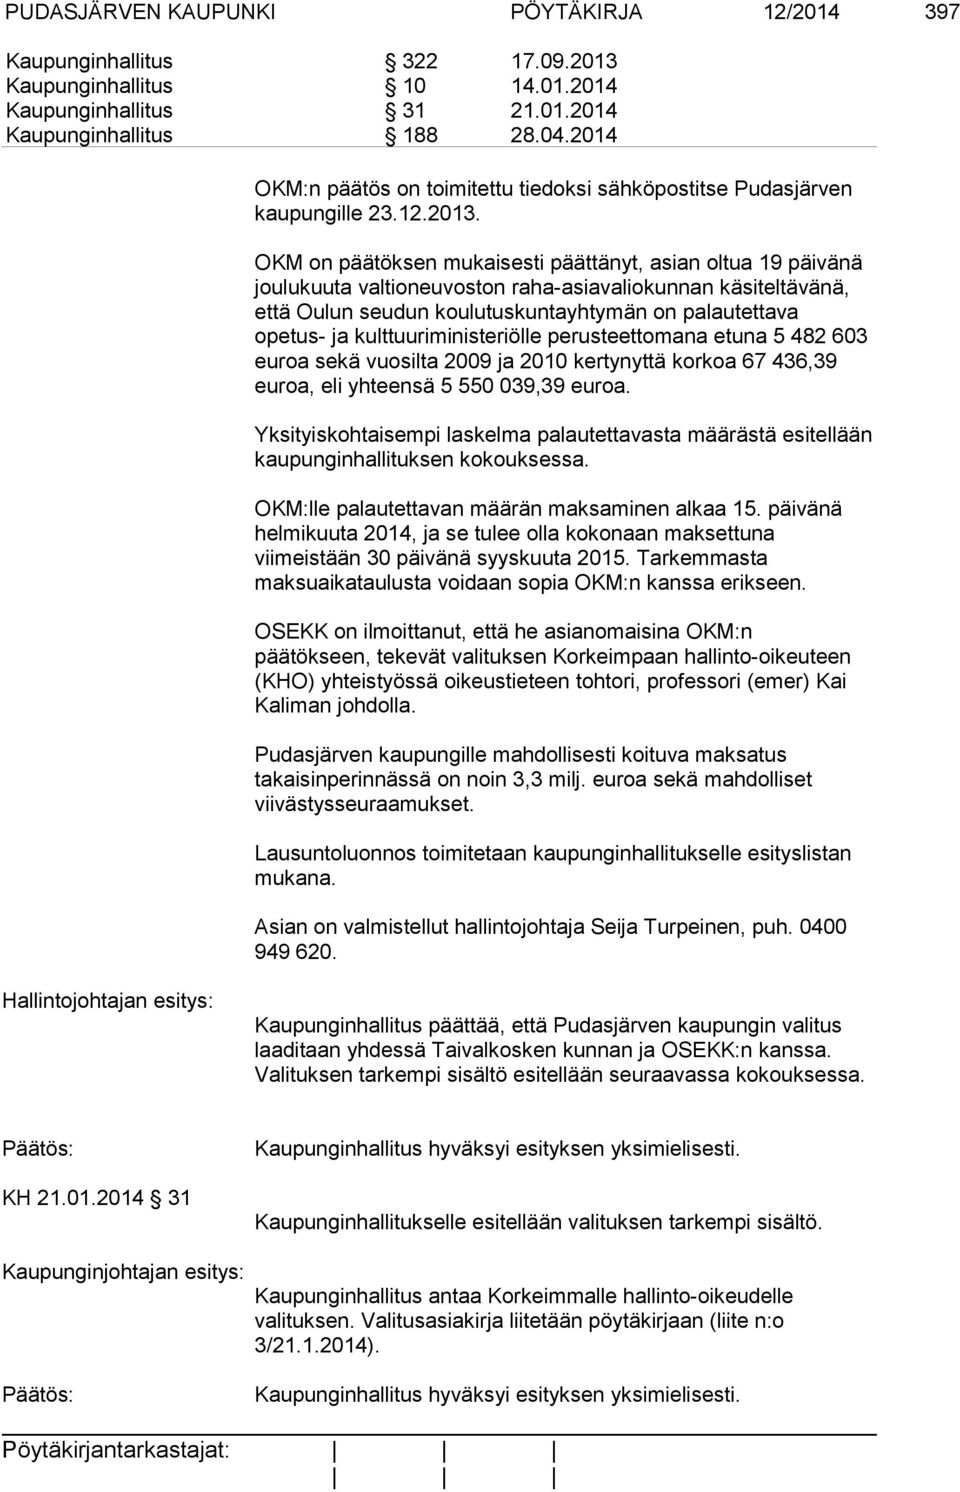 OKM on päätöksen mukaisesti päättänyt, asian oltua 19 päivänä joulukuuta valtioneuvoston raha-asiavaliokunnan käsiteltävänä, että Oulun seudun koulutuskuntayhtymän on palautettava opetus- ja